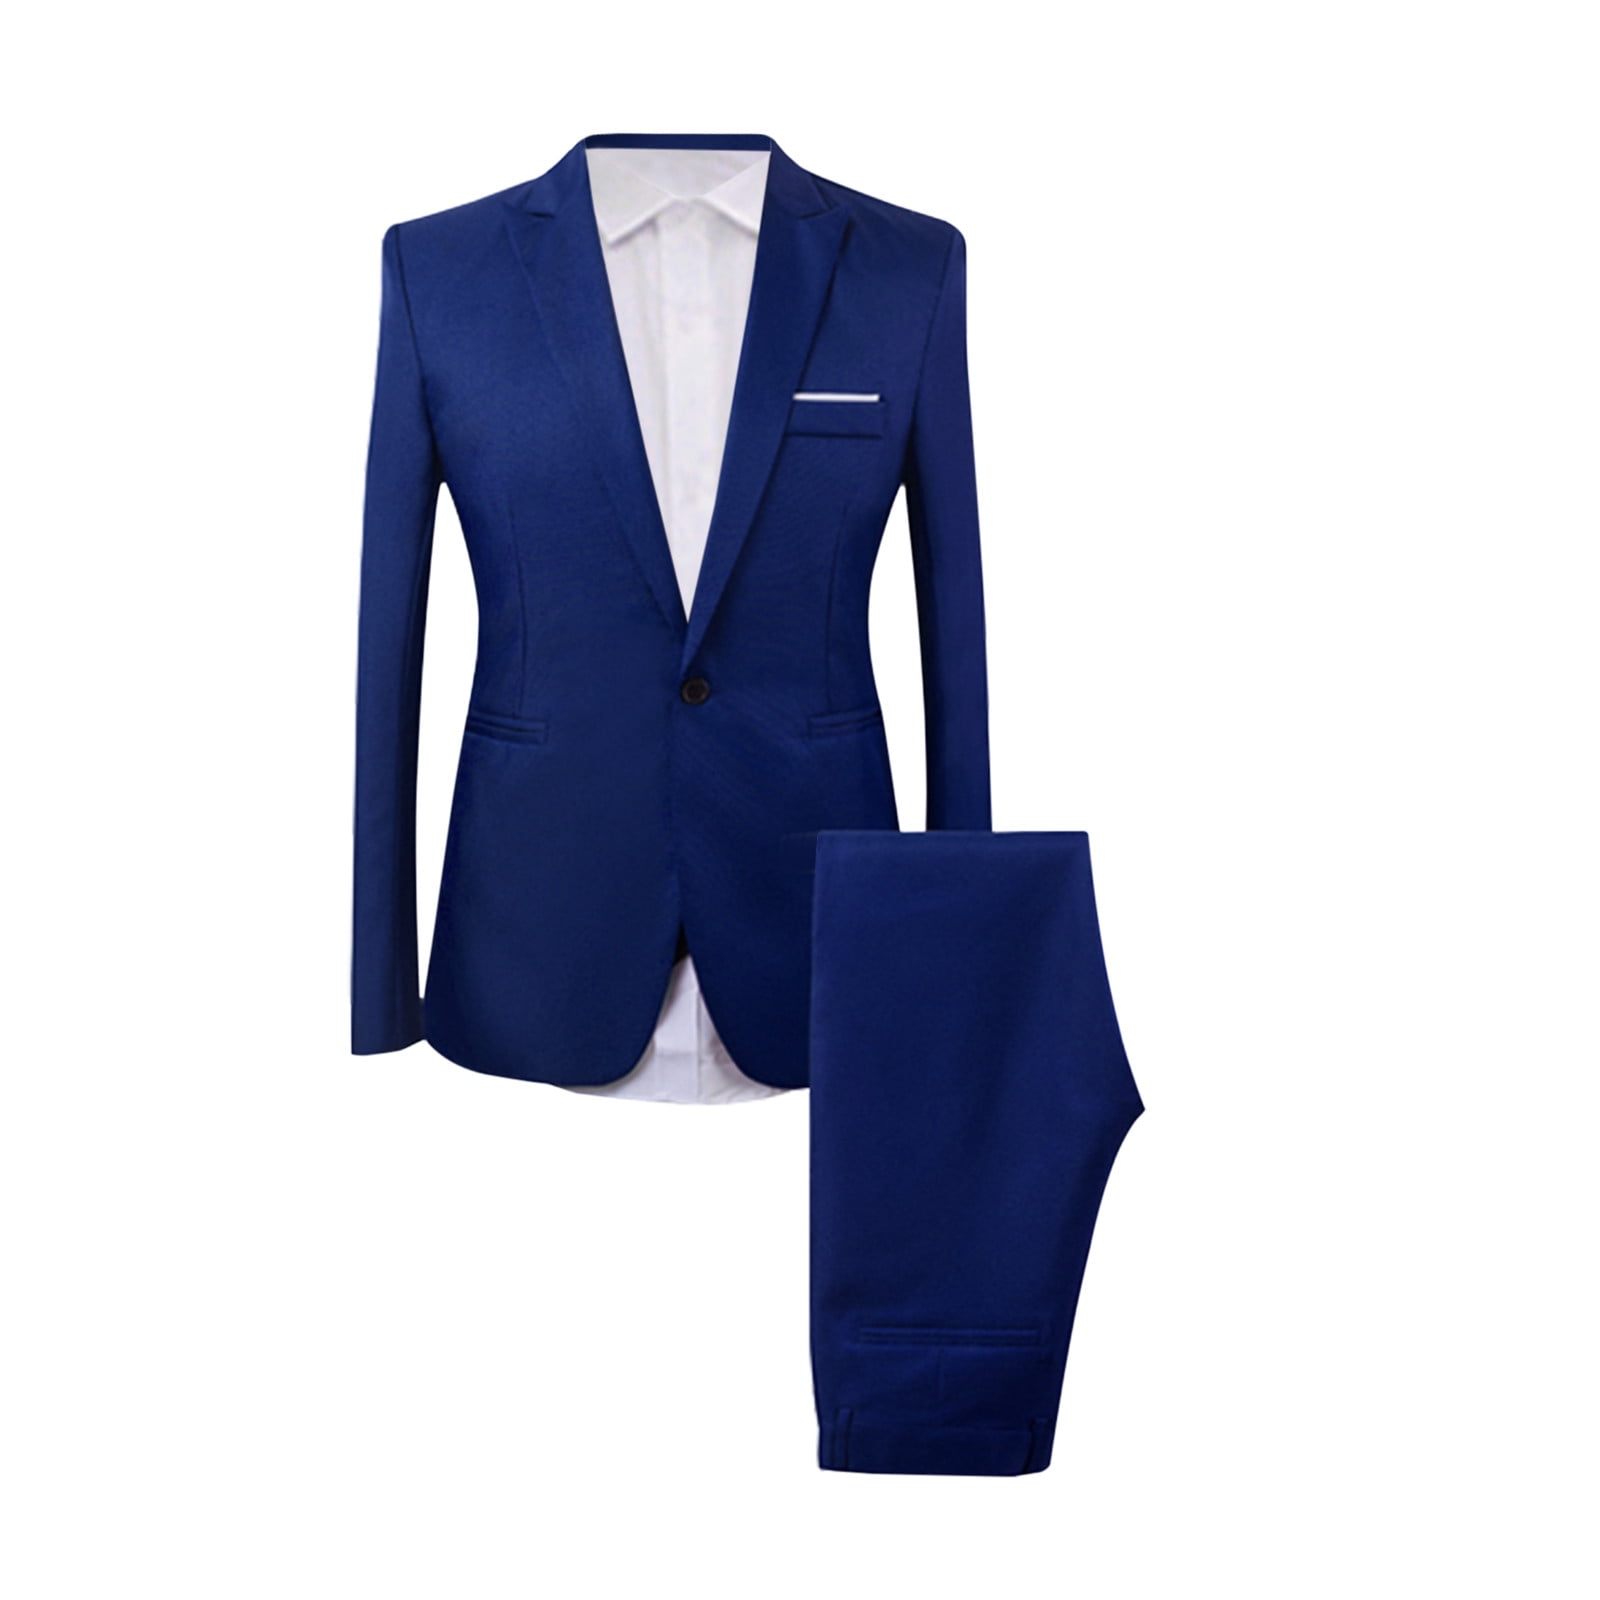 Henpk Clearance Suits for Men Men'S Fashion Suit Coat + Shirt + Suit ...